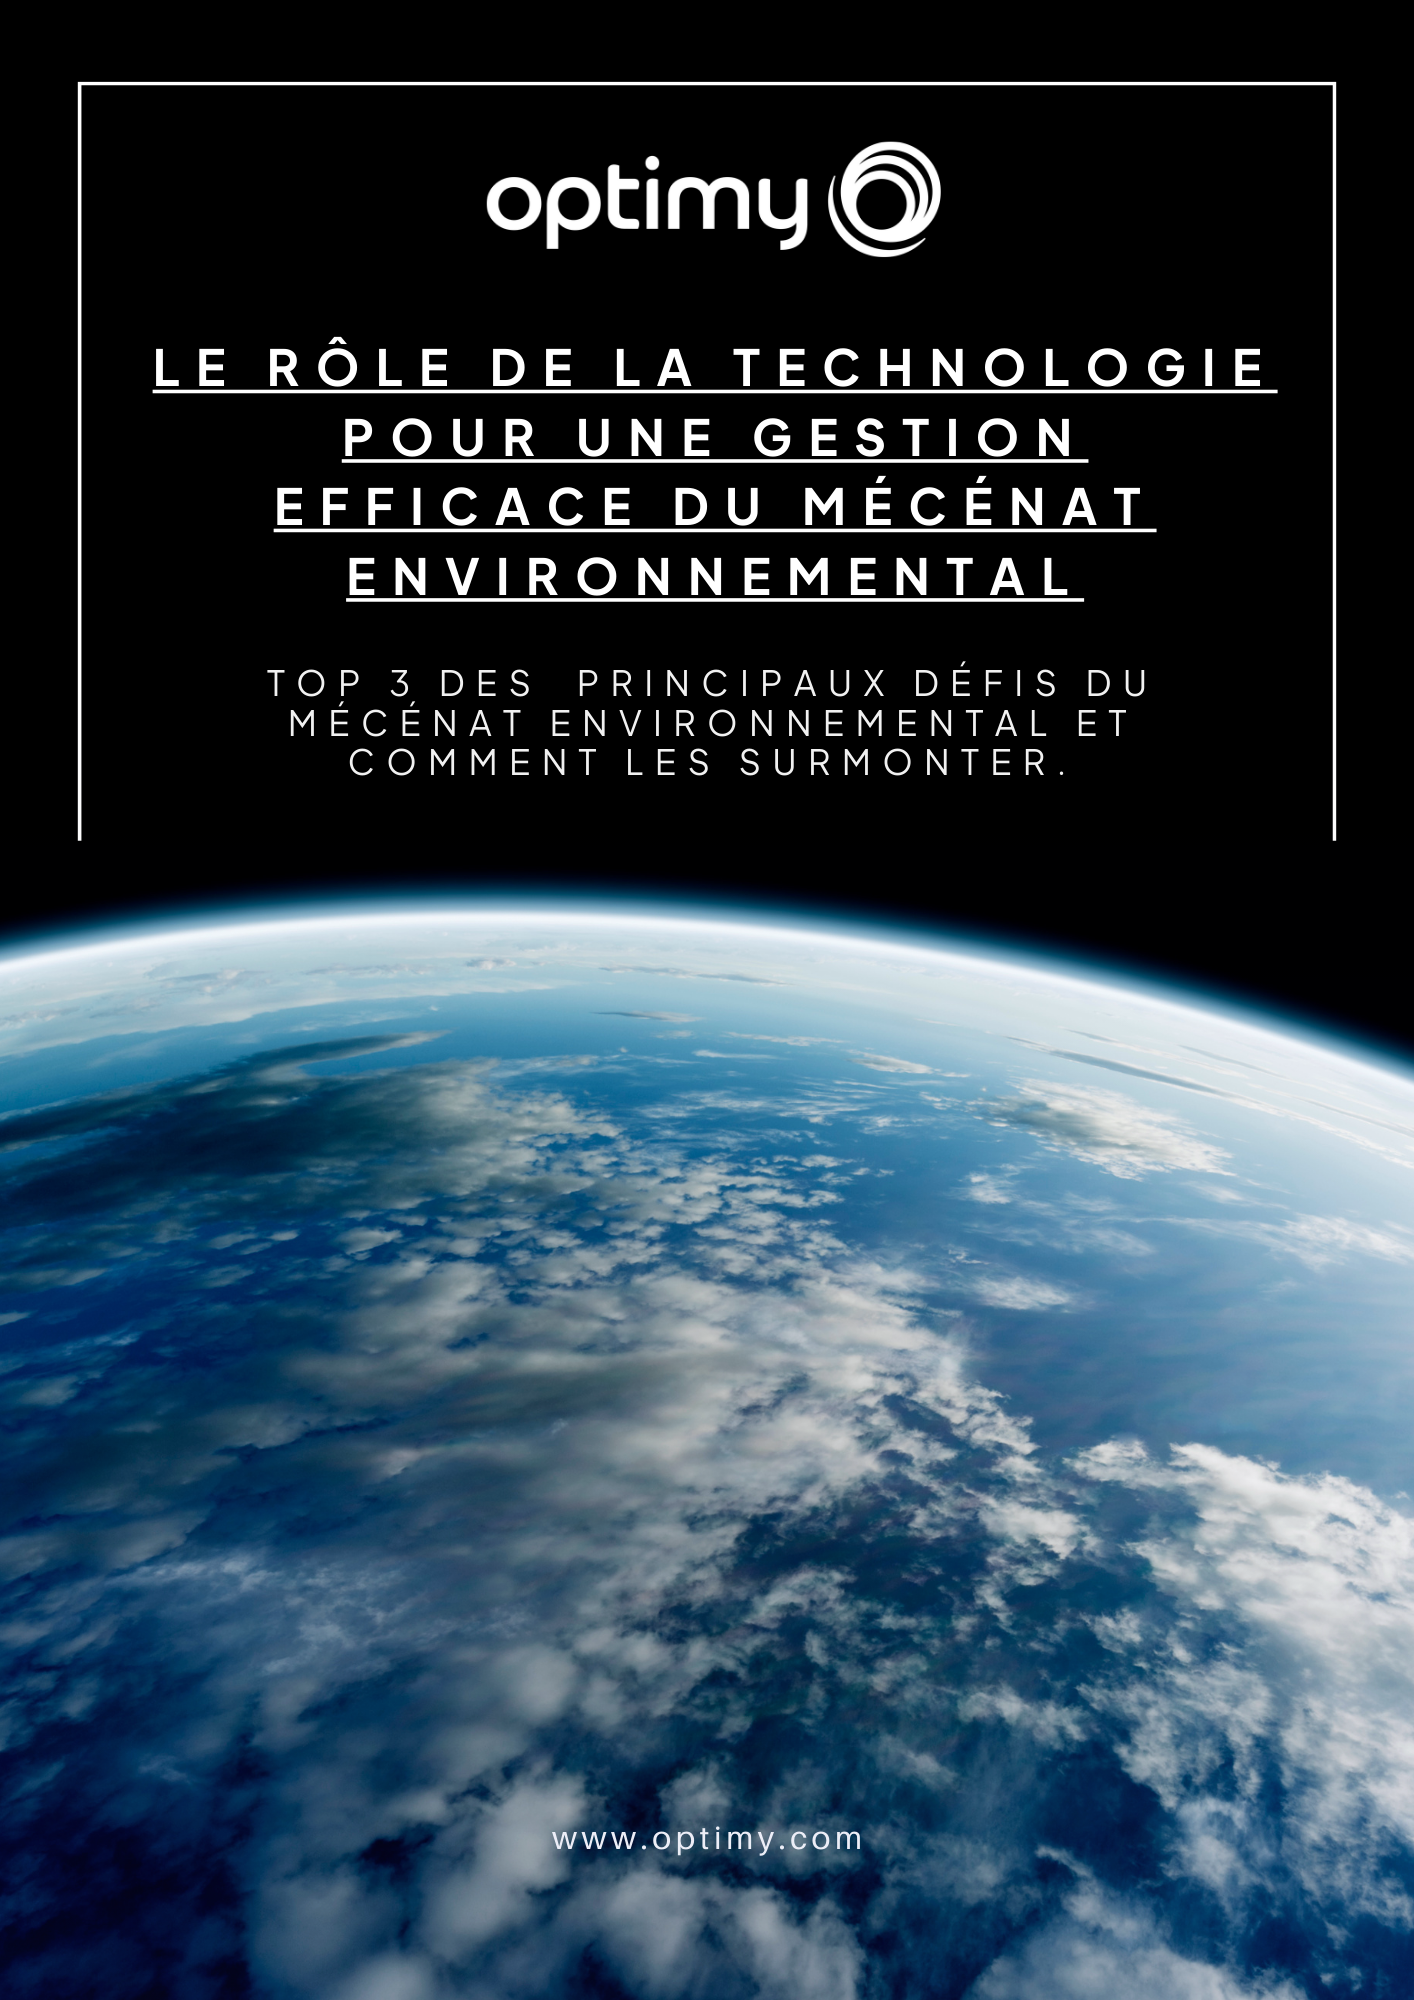 Mécénat environnemental : le rôle de la technologie pour une gestion efficace - Crédit photo : Optimy